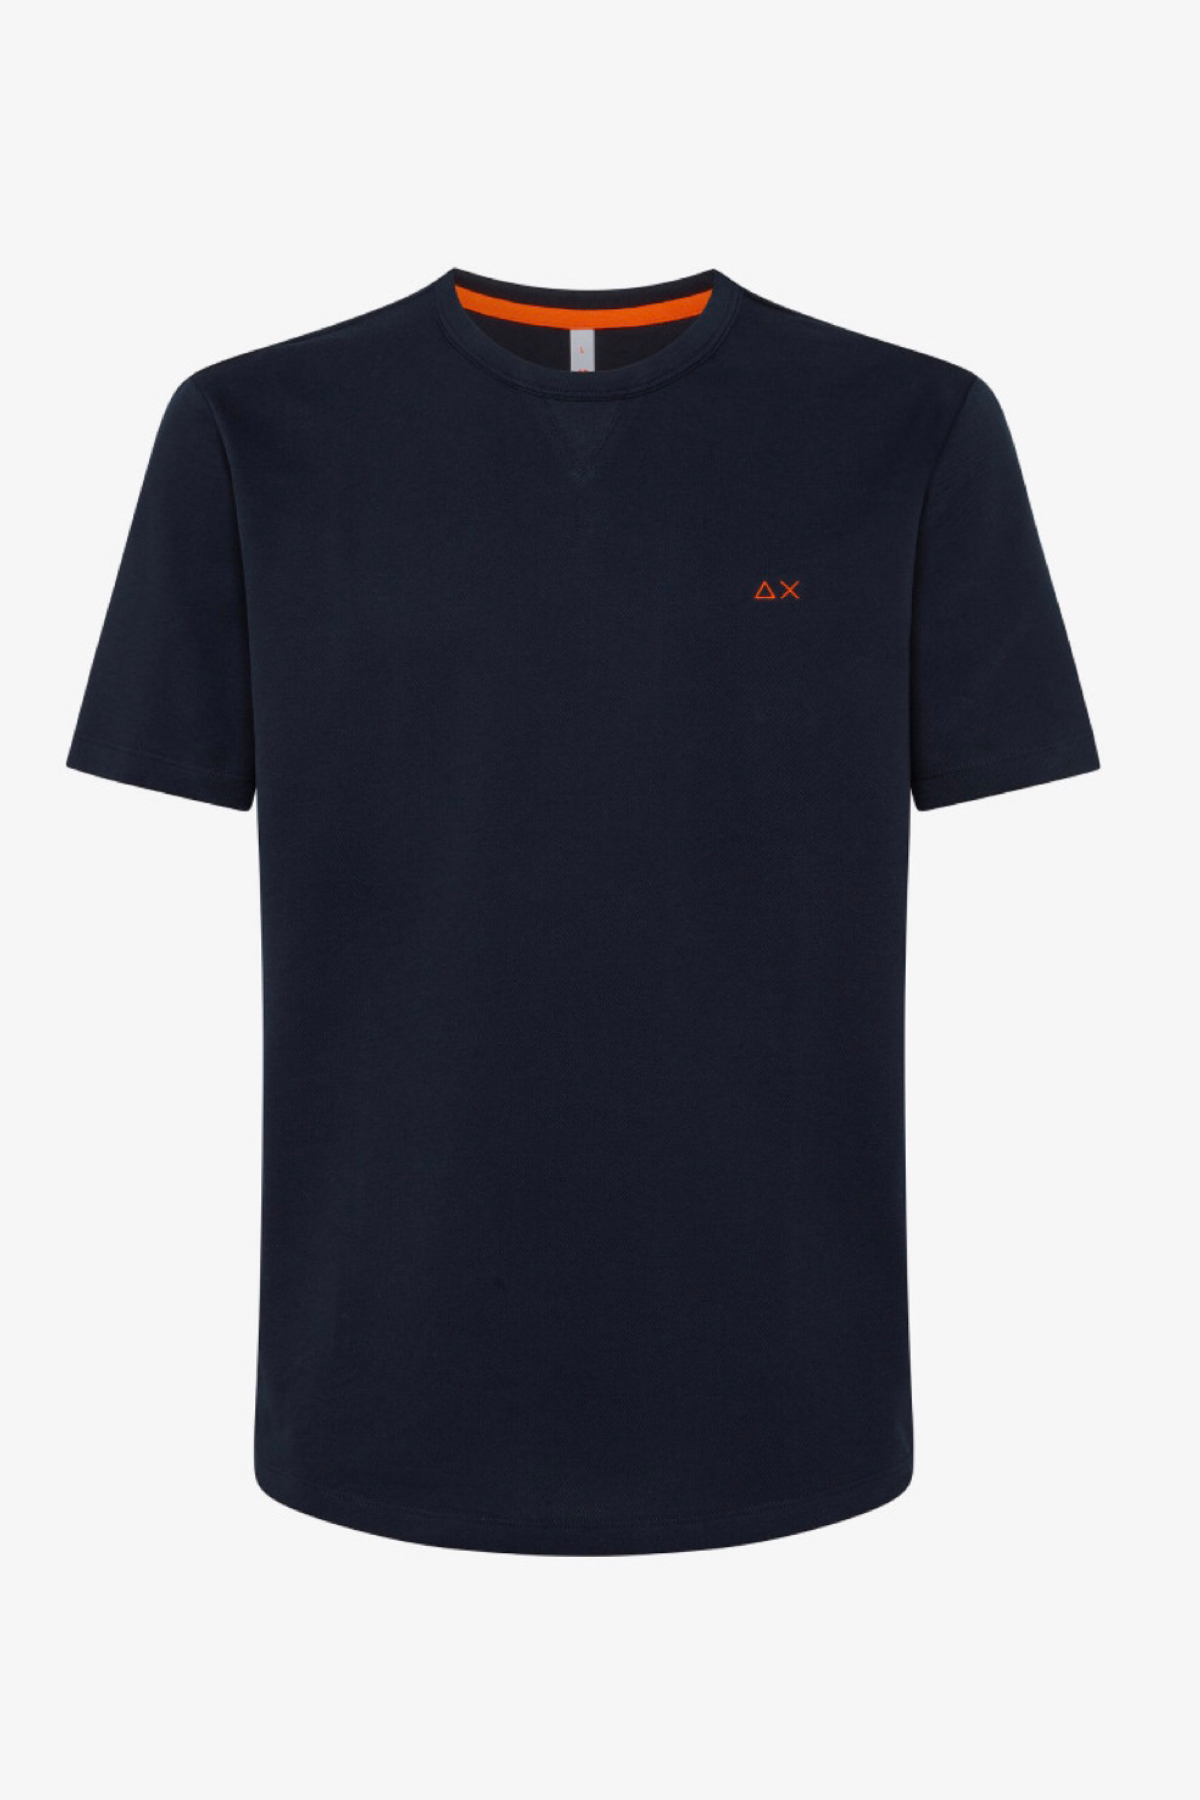 Sun68 t-shirt T33120 navy